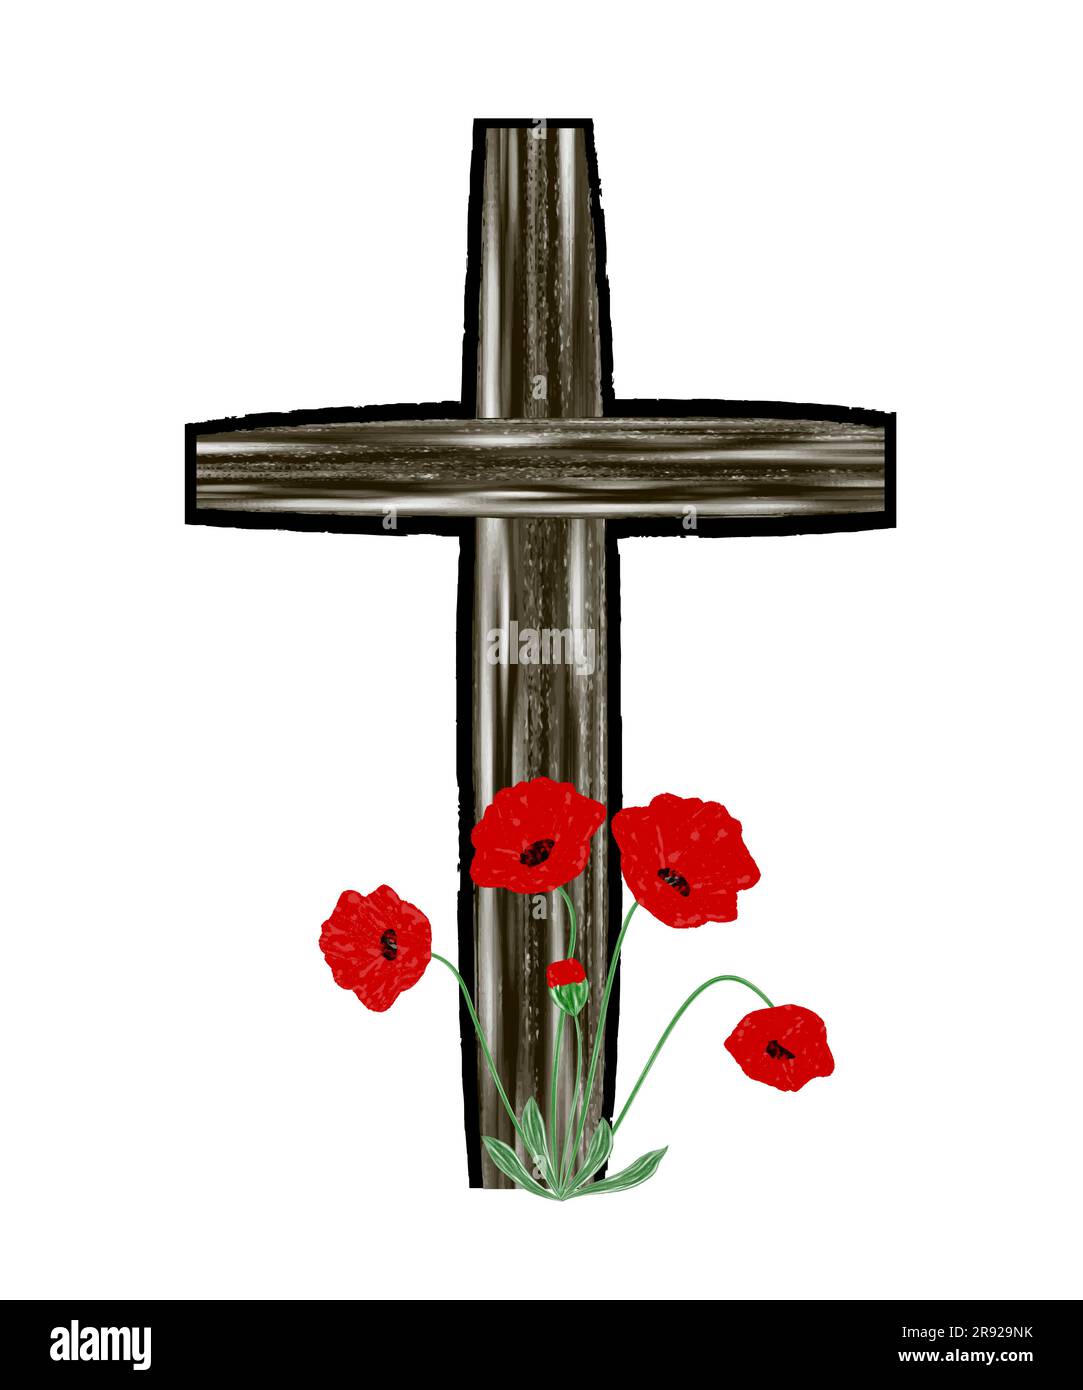 Lapide del cimitero con papaveri. Croce nera elemento di design testurizzato Grunge illustrazione vettoriale per il giorno della memoria, Anzac Day Illustrazione Vettoriale